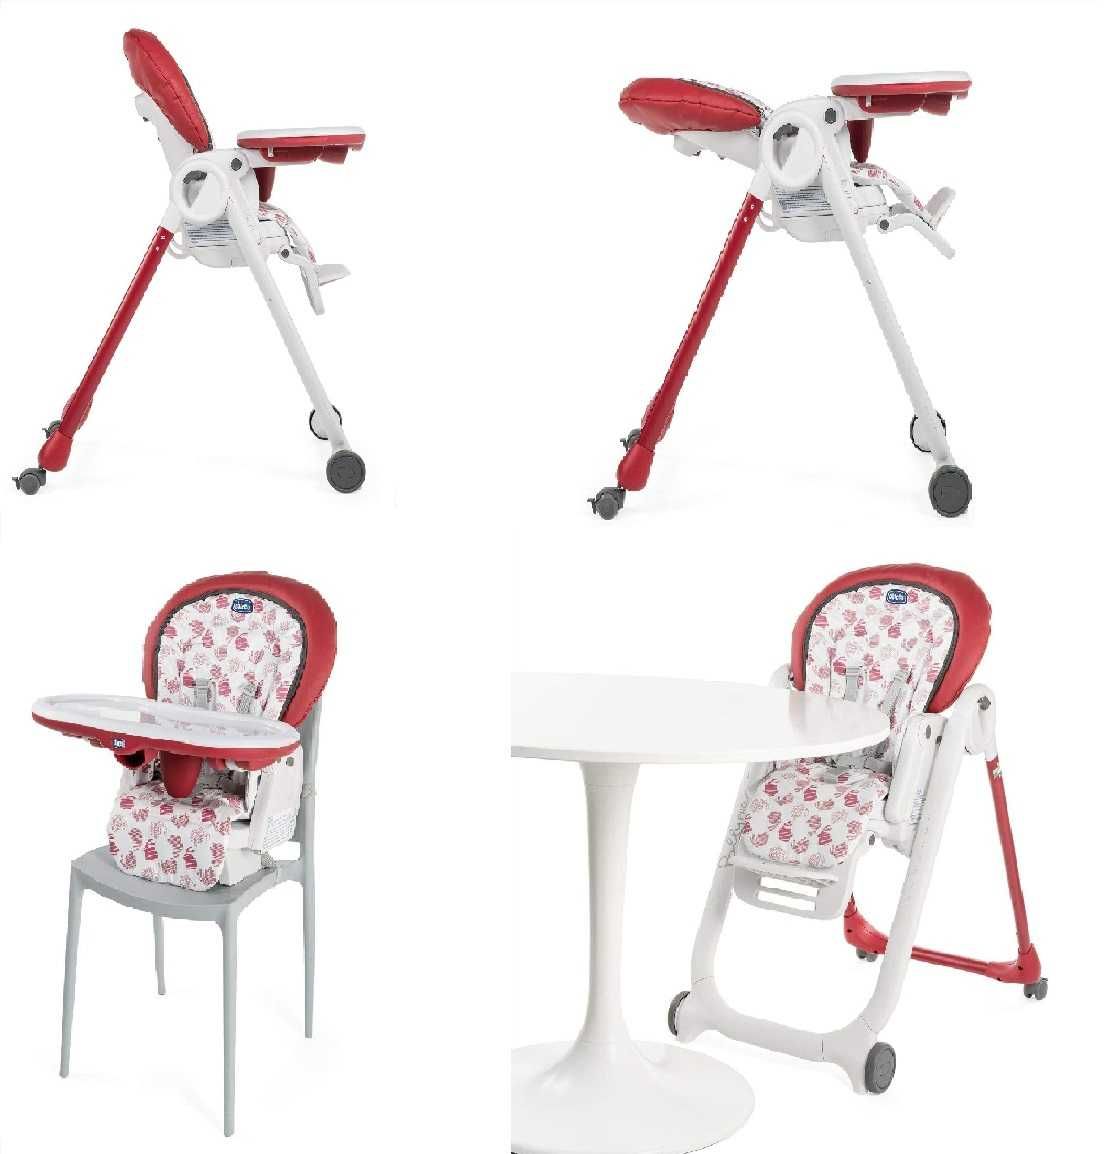 NOWE Chicco Polly Progres5 regulowane krzesło dla dzieci